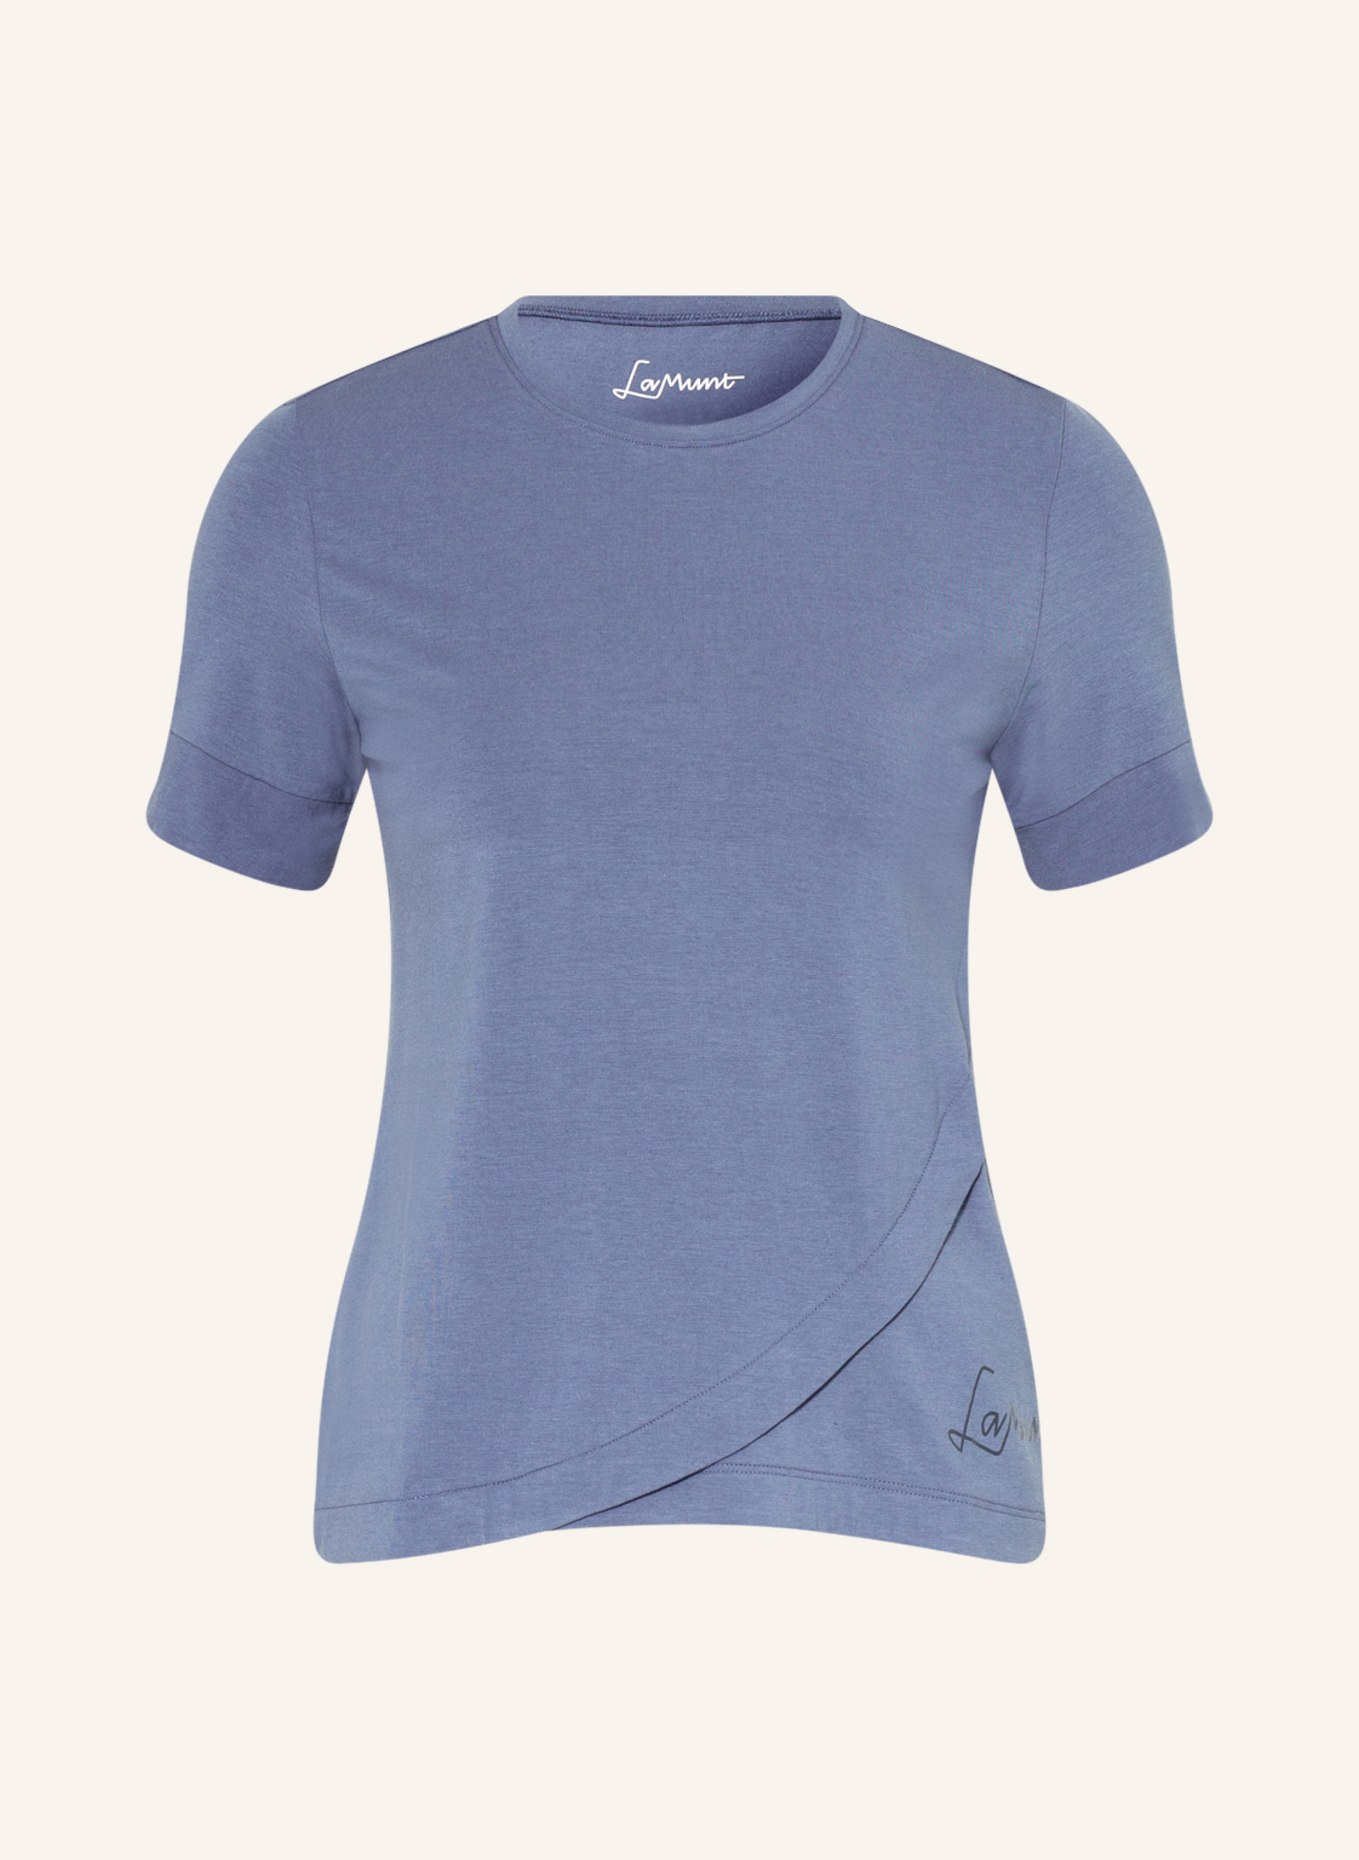 LaMunt T-shirt MARIA, Color: DARK BLUE (Image 1)